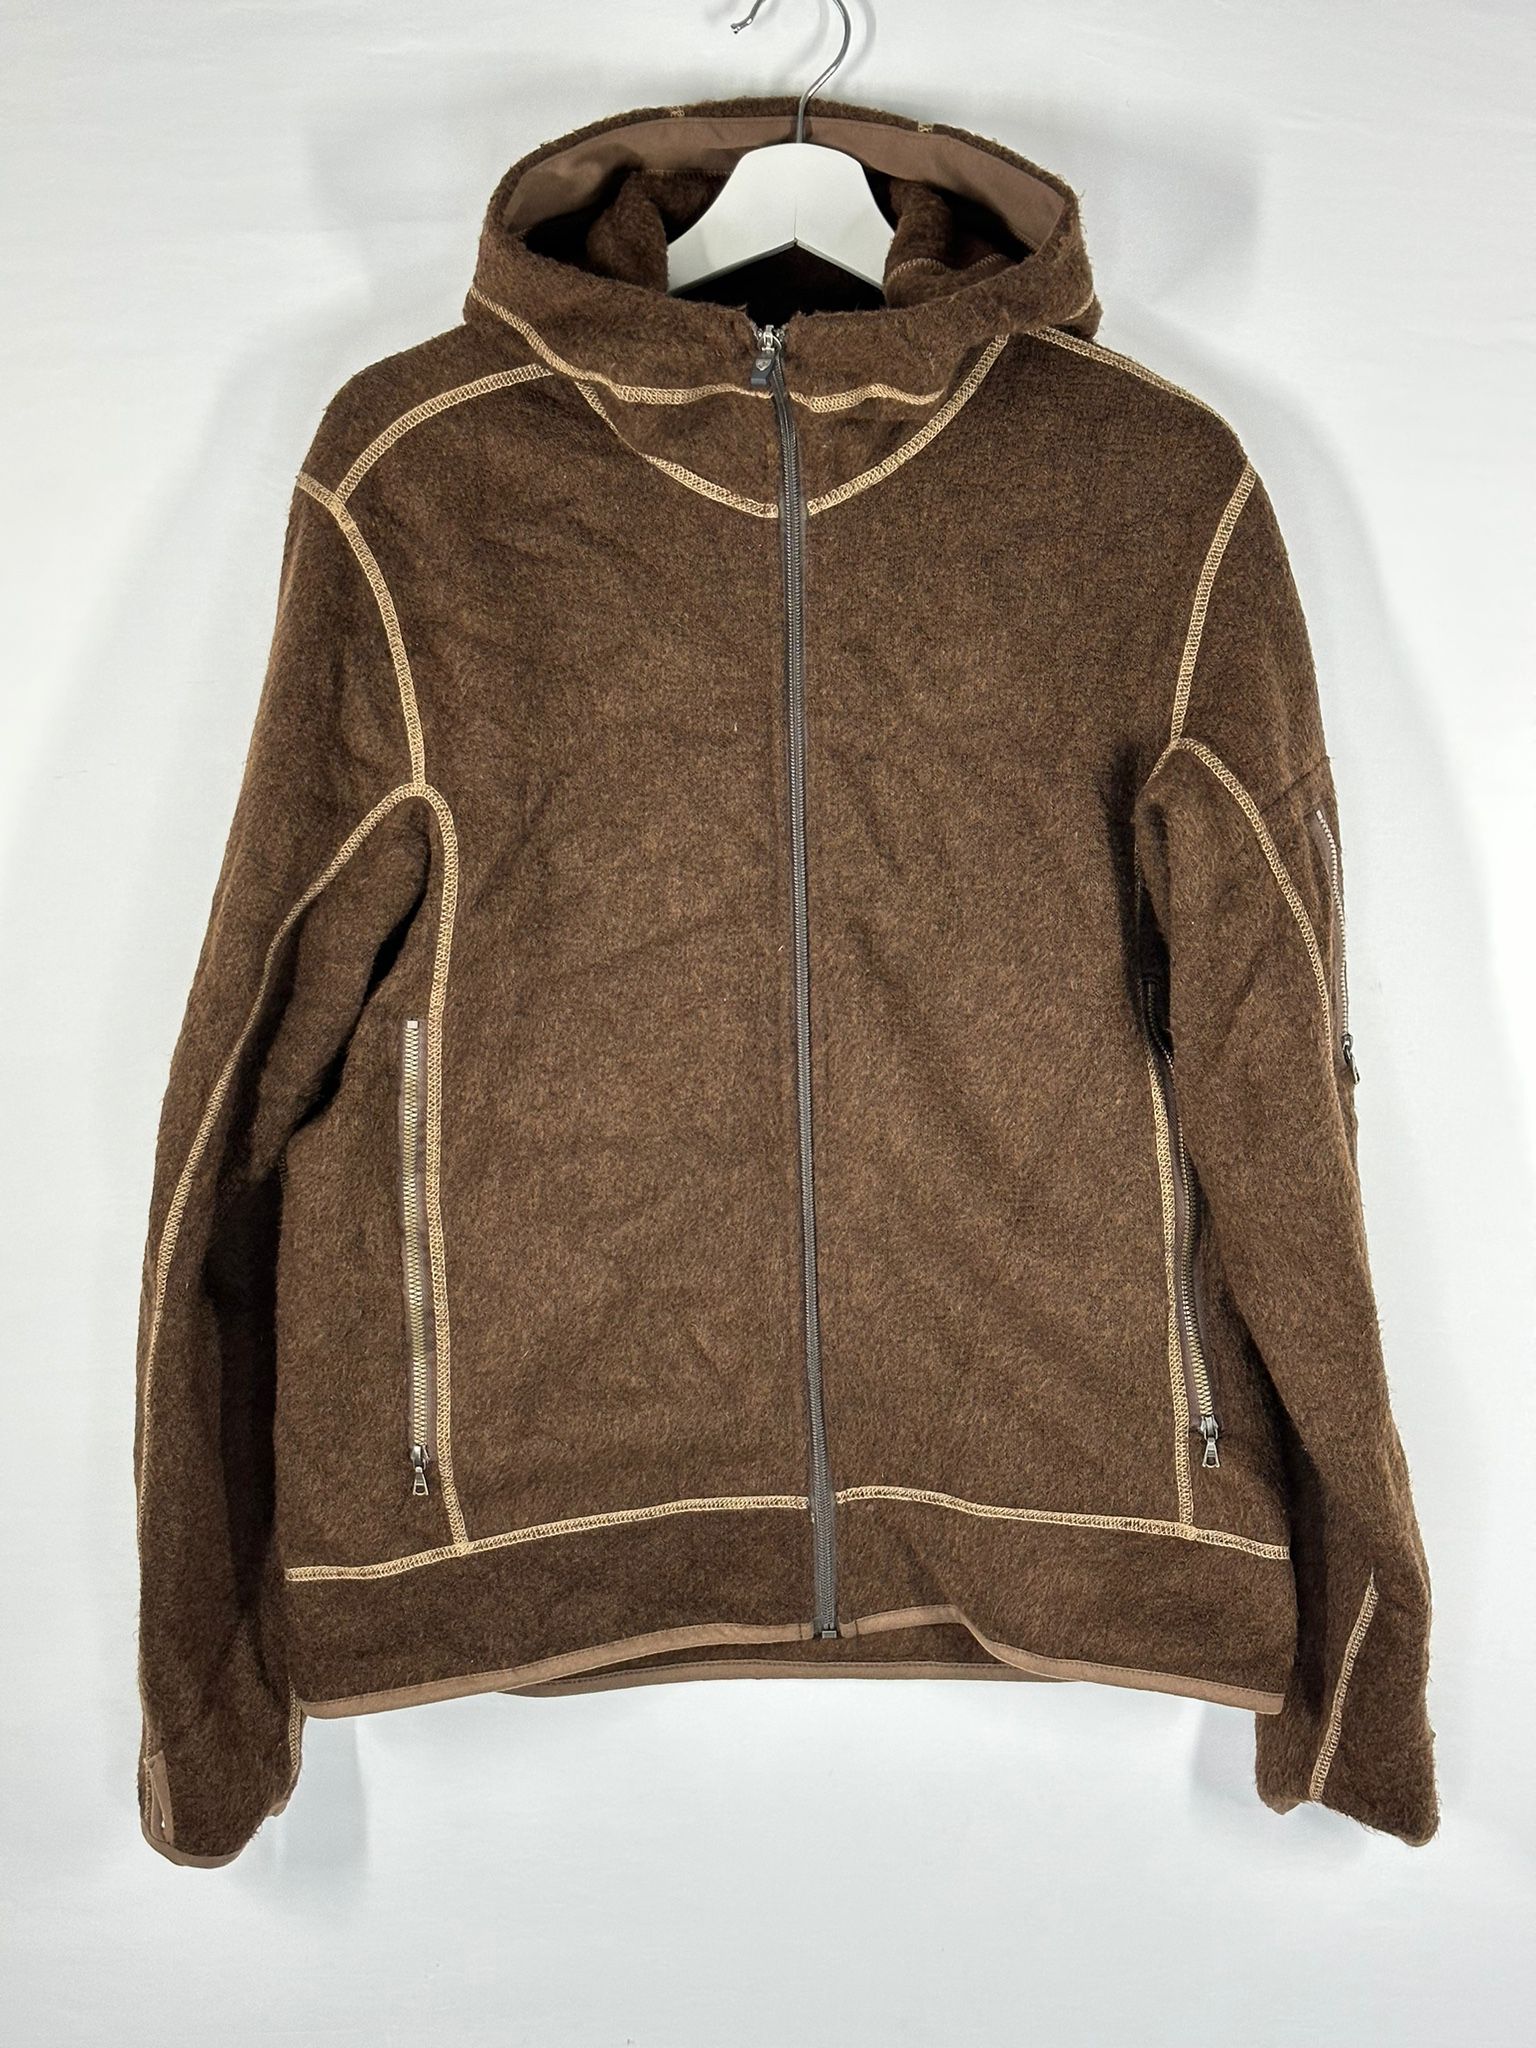 Kuhl Alfpaca Fleece Mens Jacket Full Zip RN108846 Size M #413